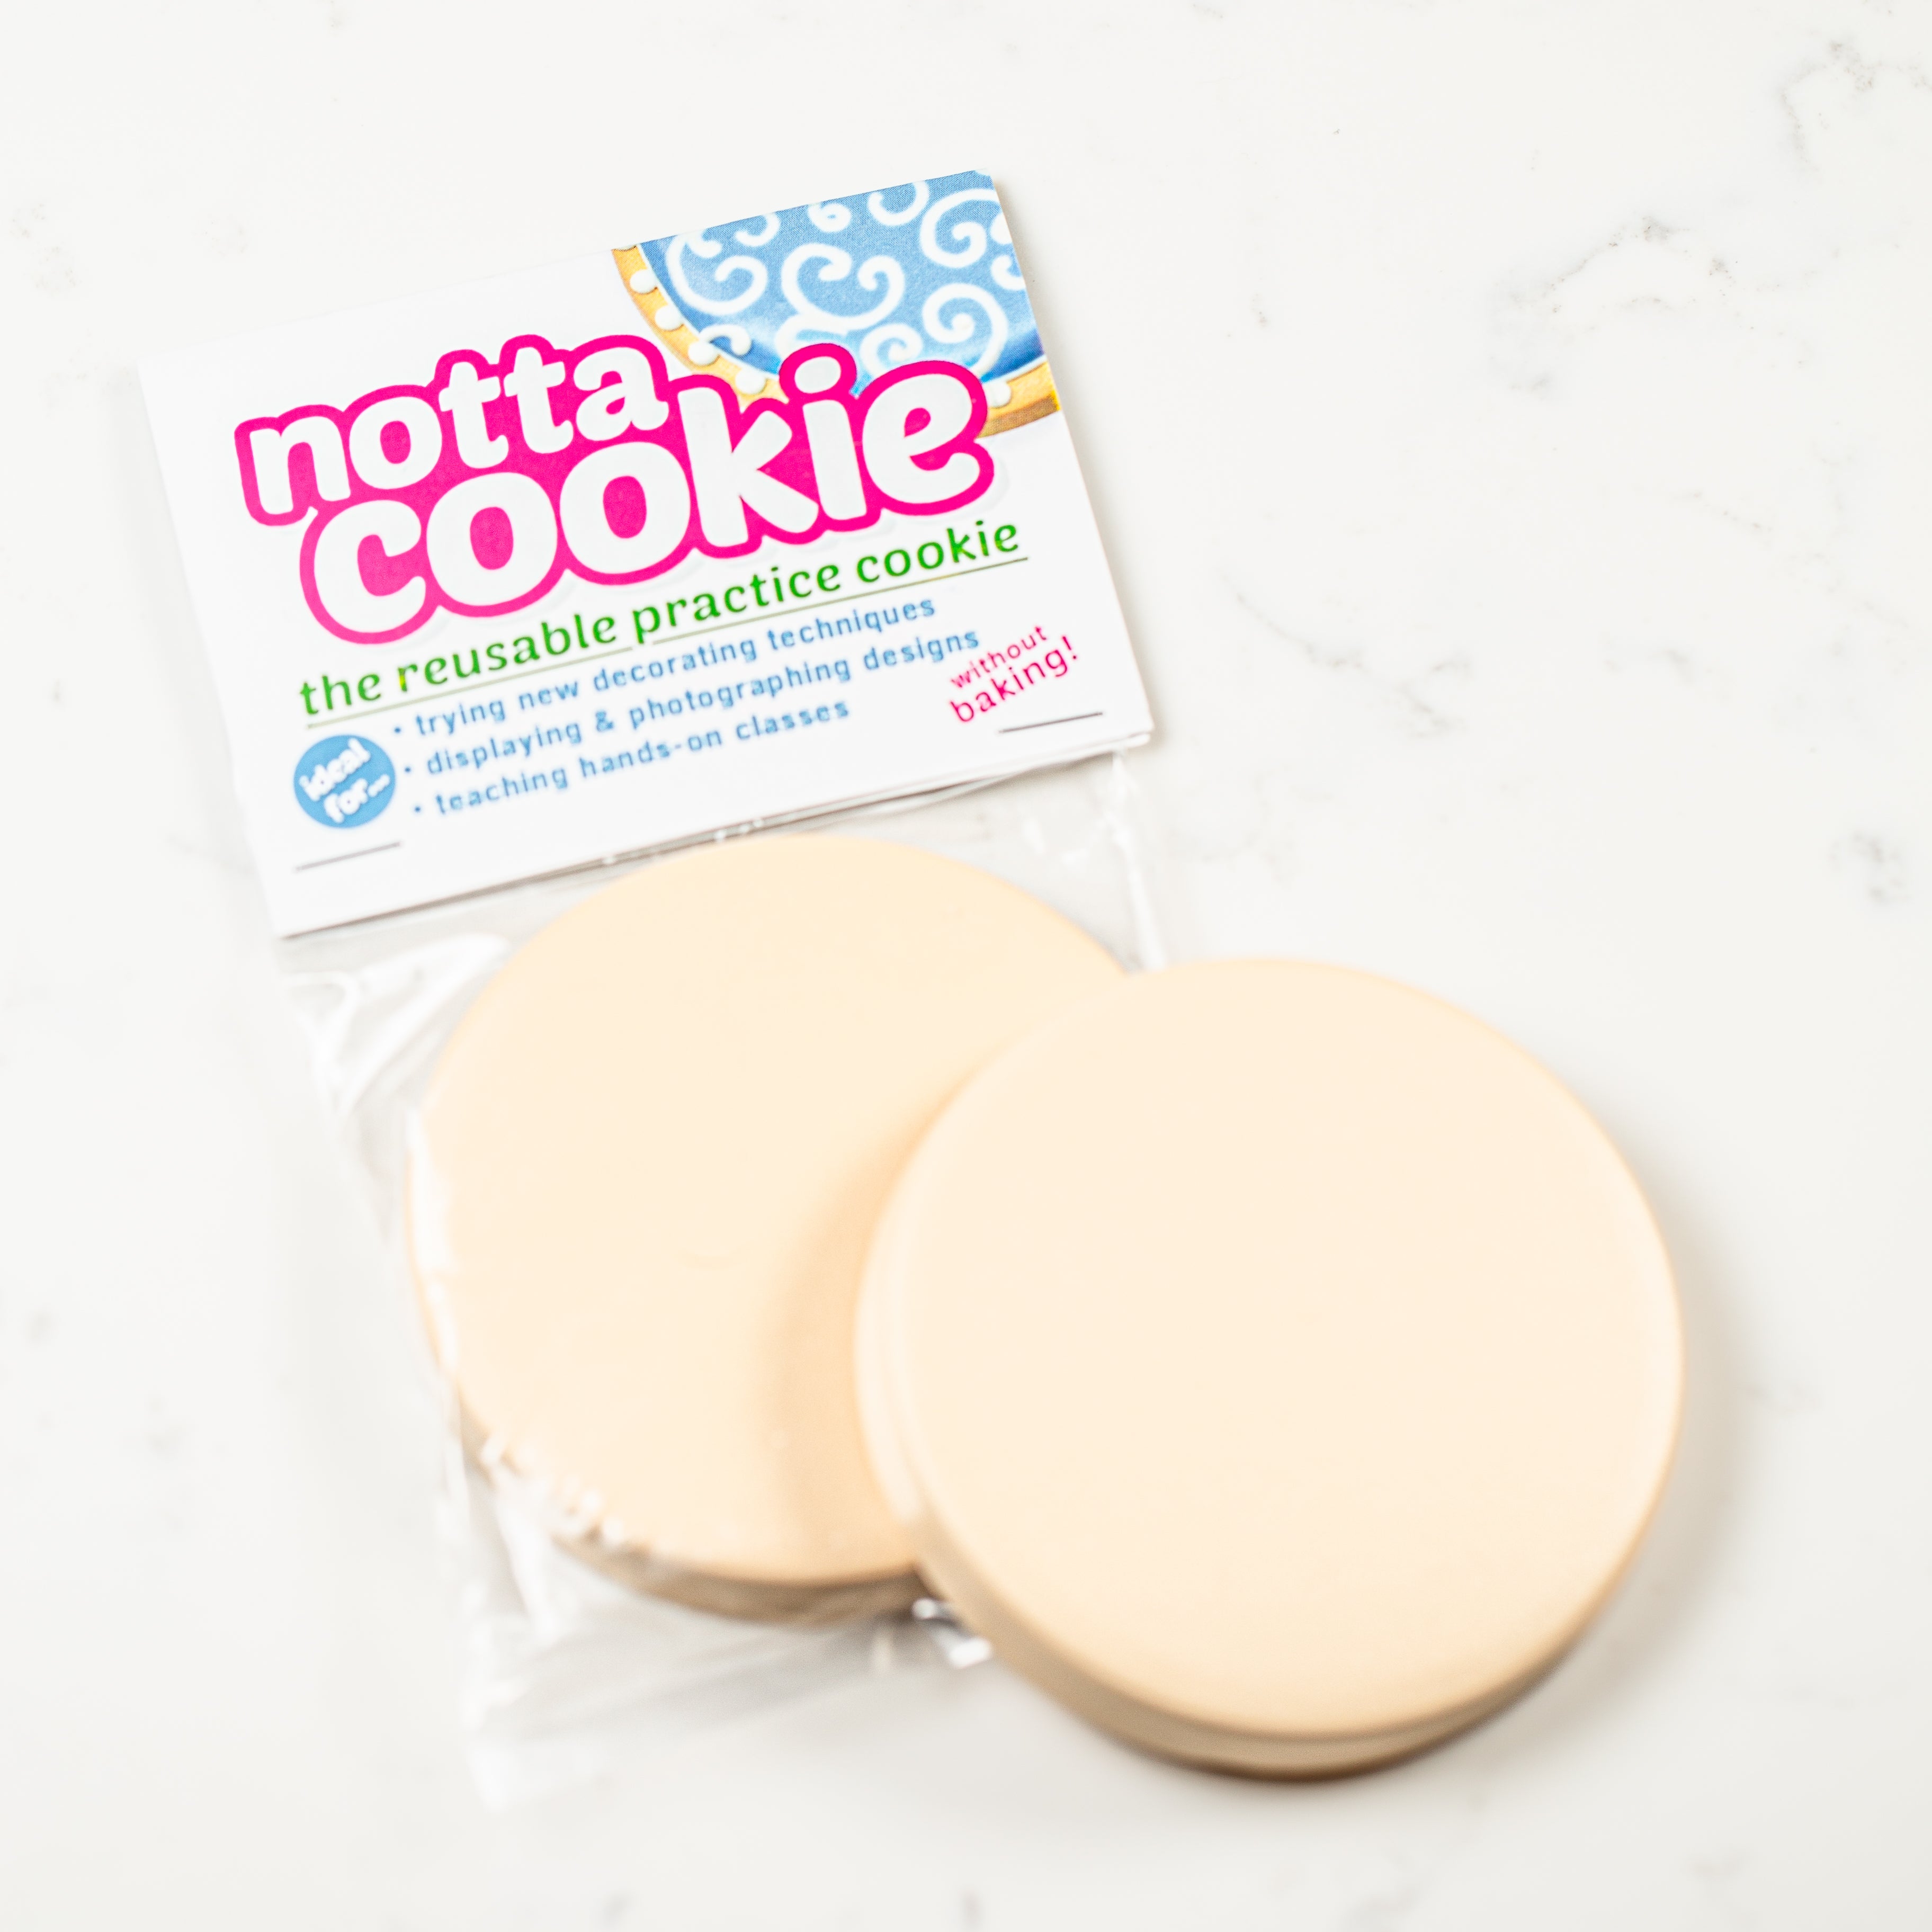 Notta Cookie Reusable Practice Cookie (1 pc)